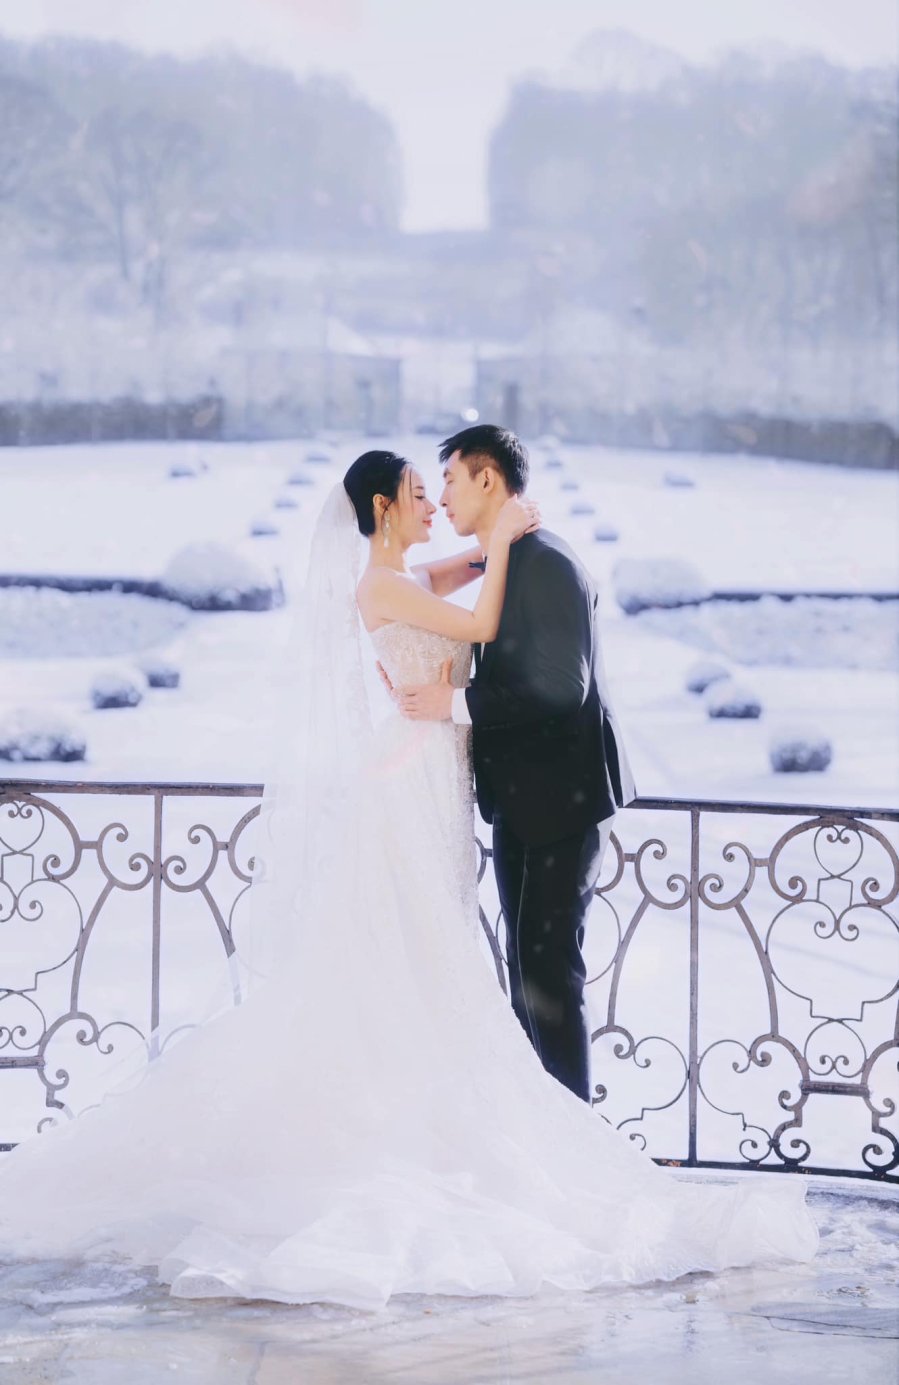 Midu tung bộ ảnh cưới chụp trong giá lạnh âm 6 độ tại Paris